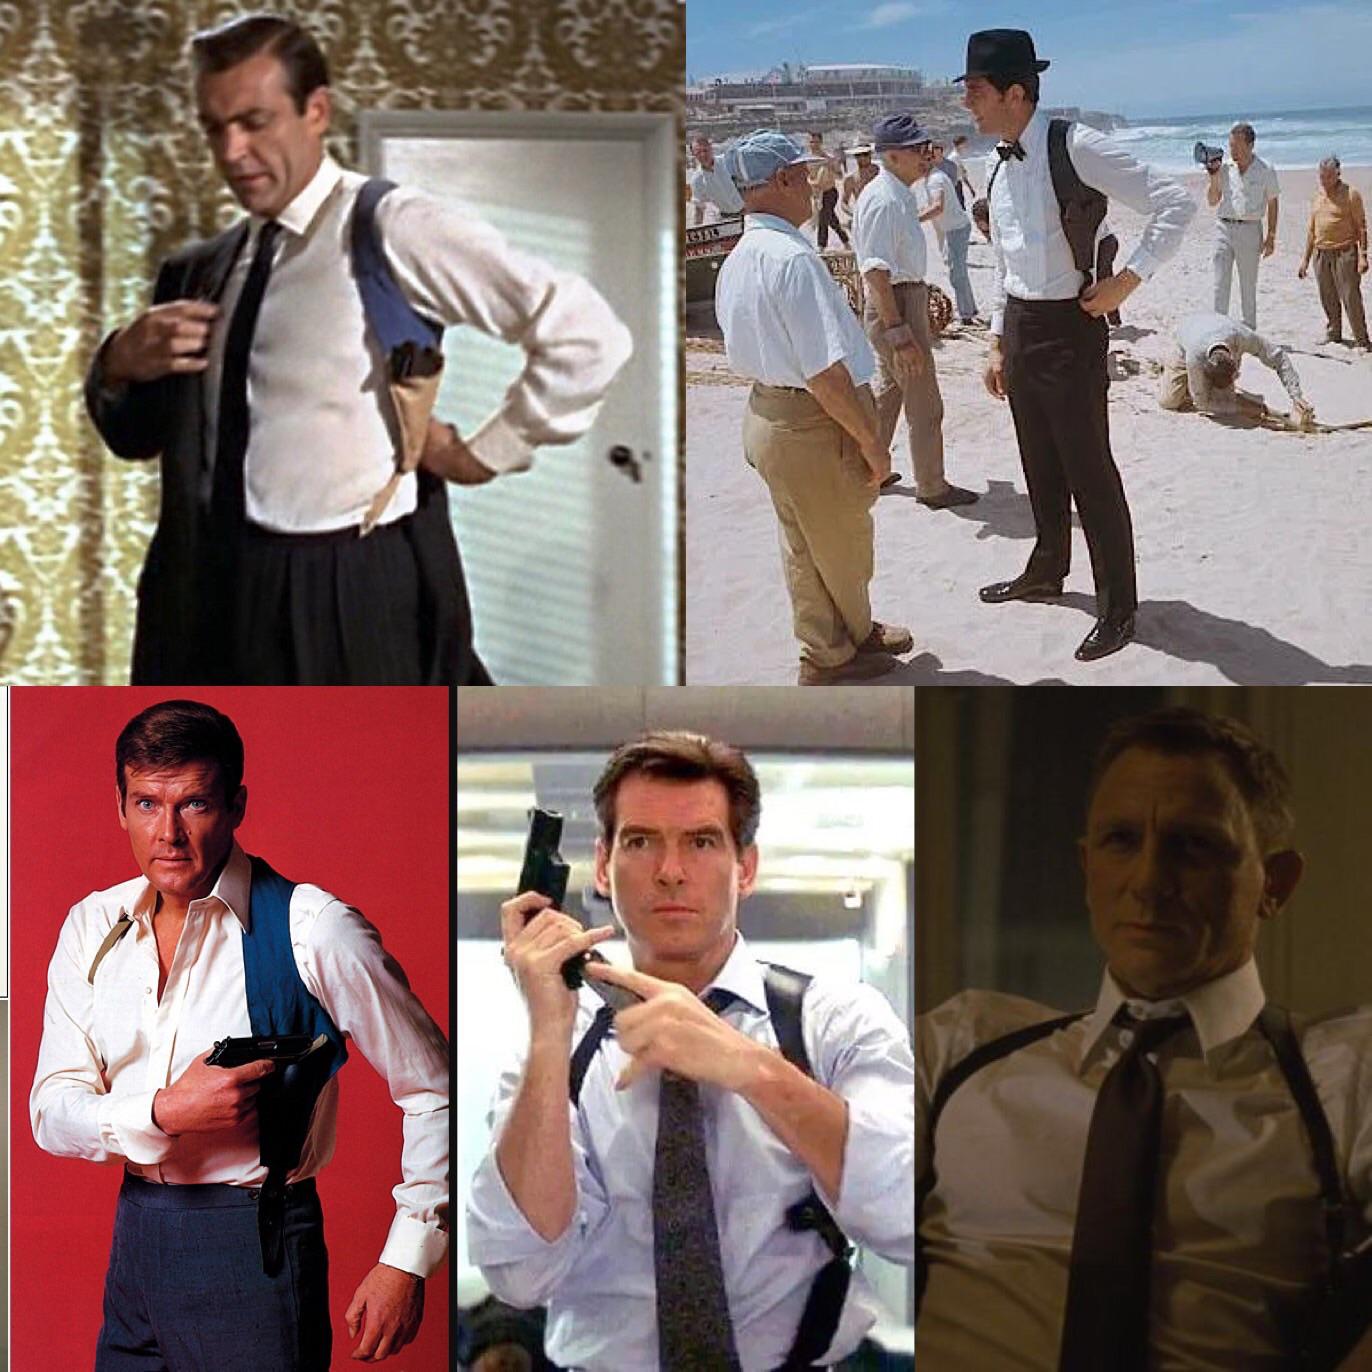 James Bond’s pistol holster | Scrolller